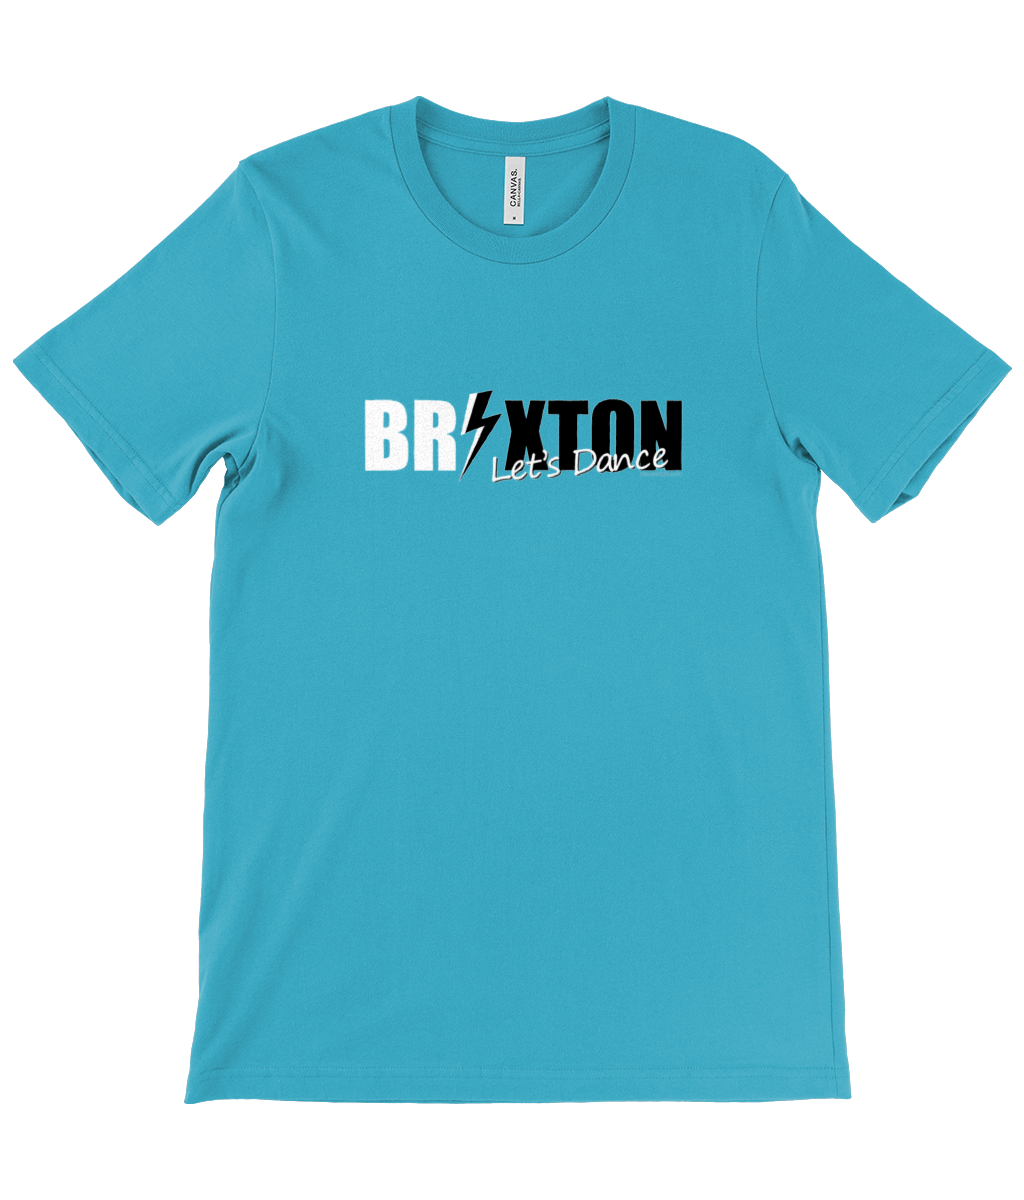 Let's Dance Brixton t-shirt teal